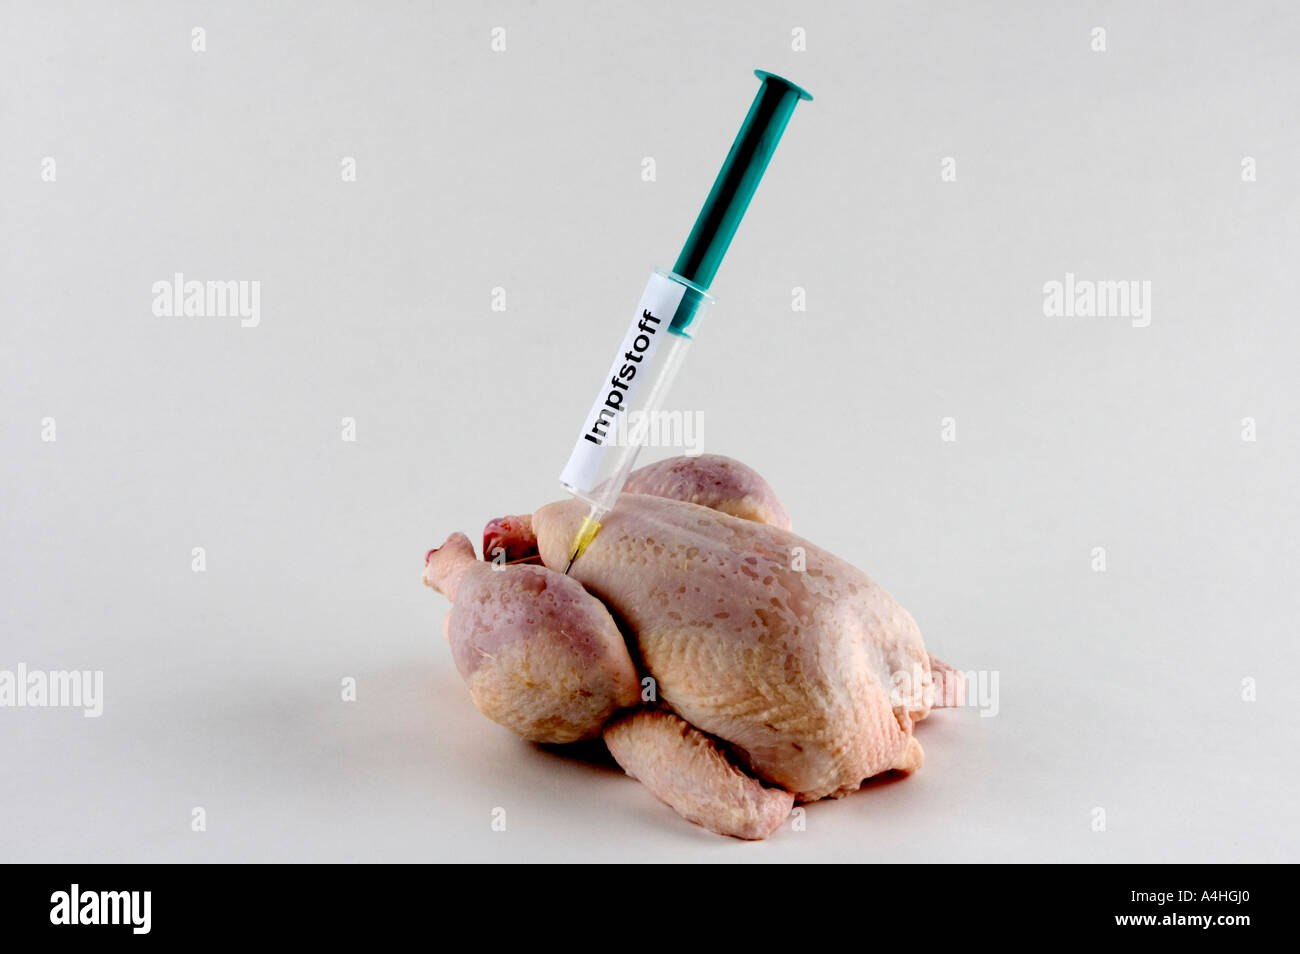 Pollo gripe pandémica gripe aviar enfermedad de enfermedades peligrosas para la salud de peligro biológico seguro seguridad precaución Foto de stock